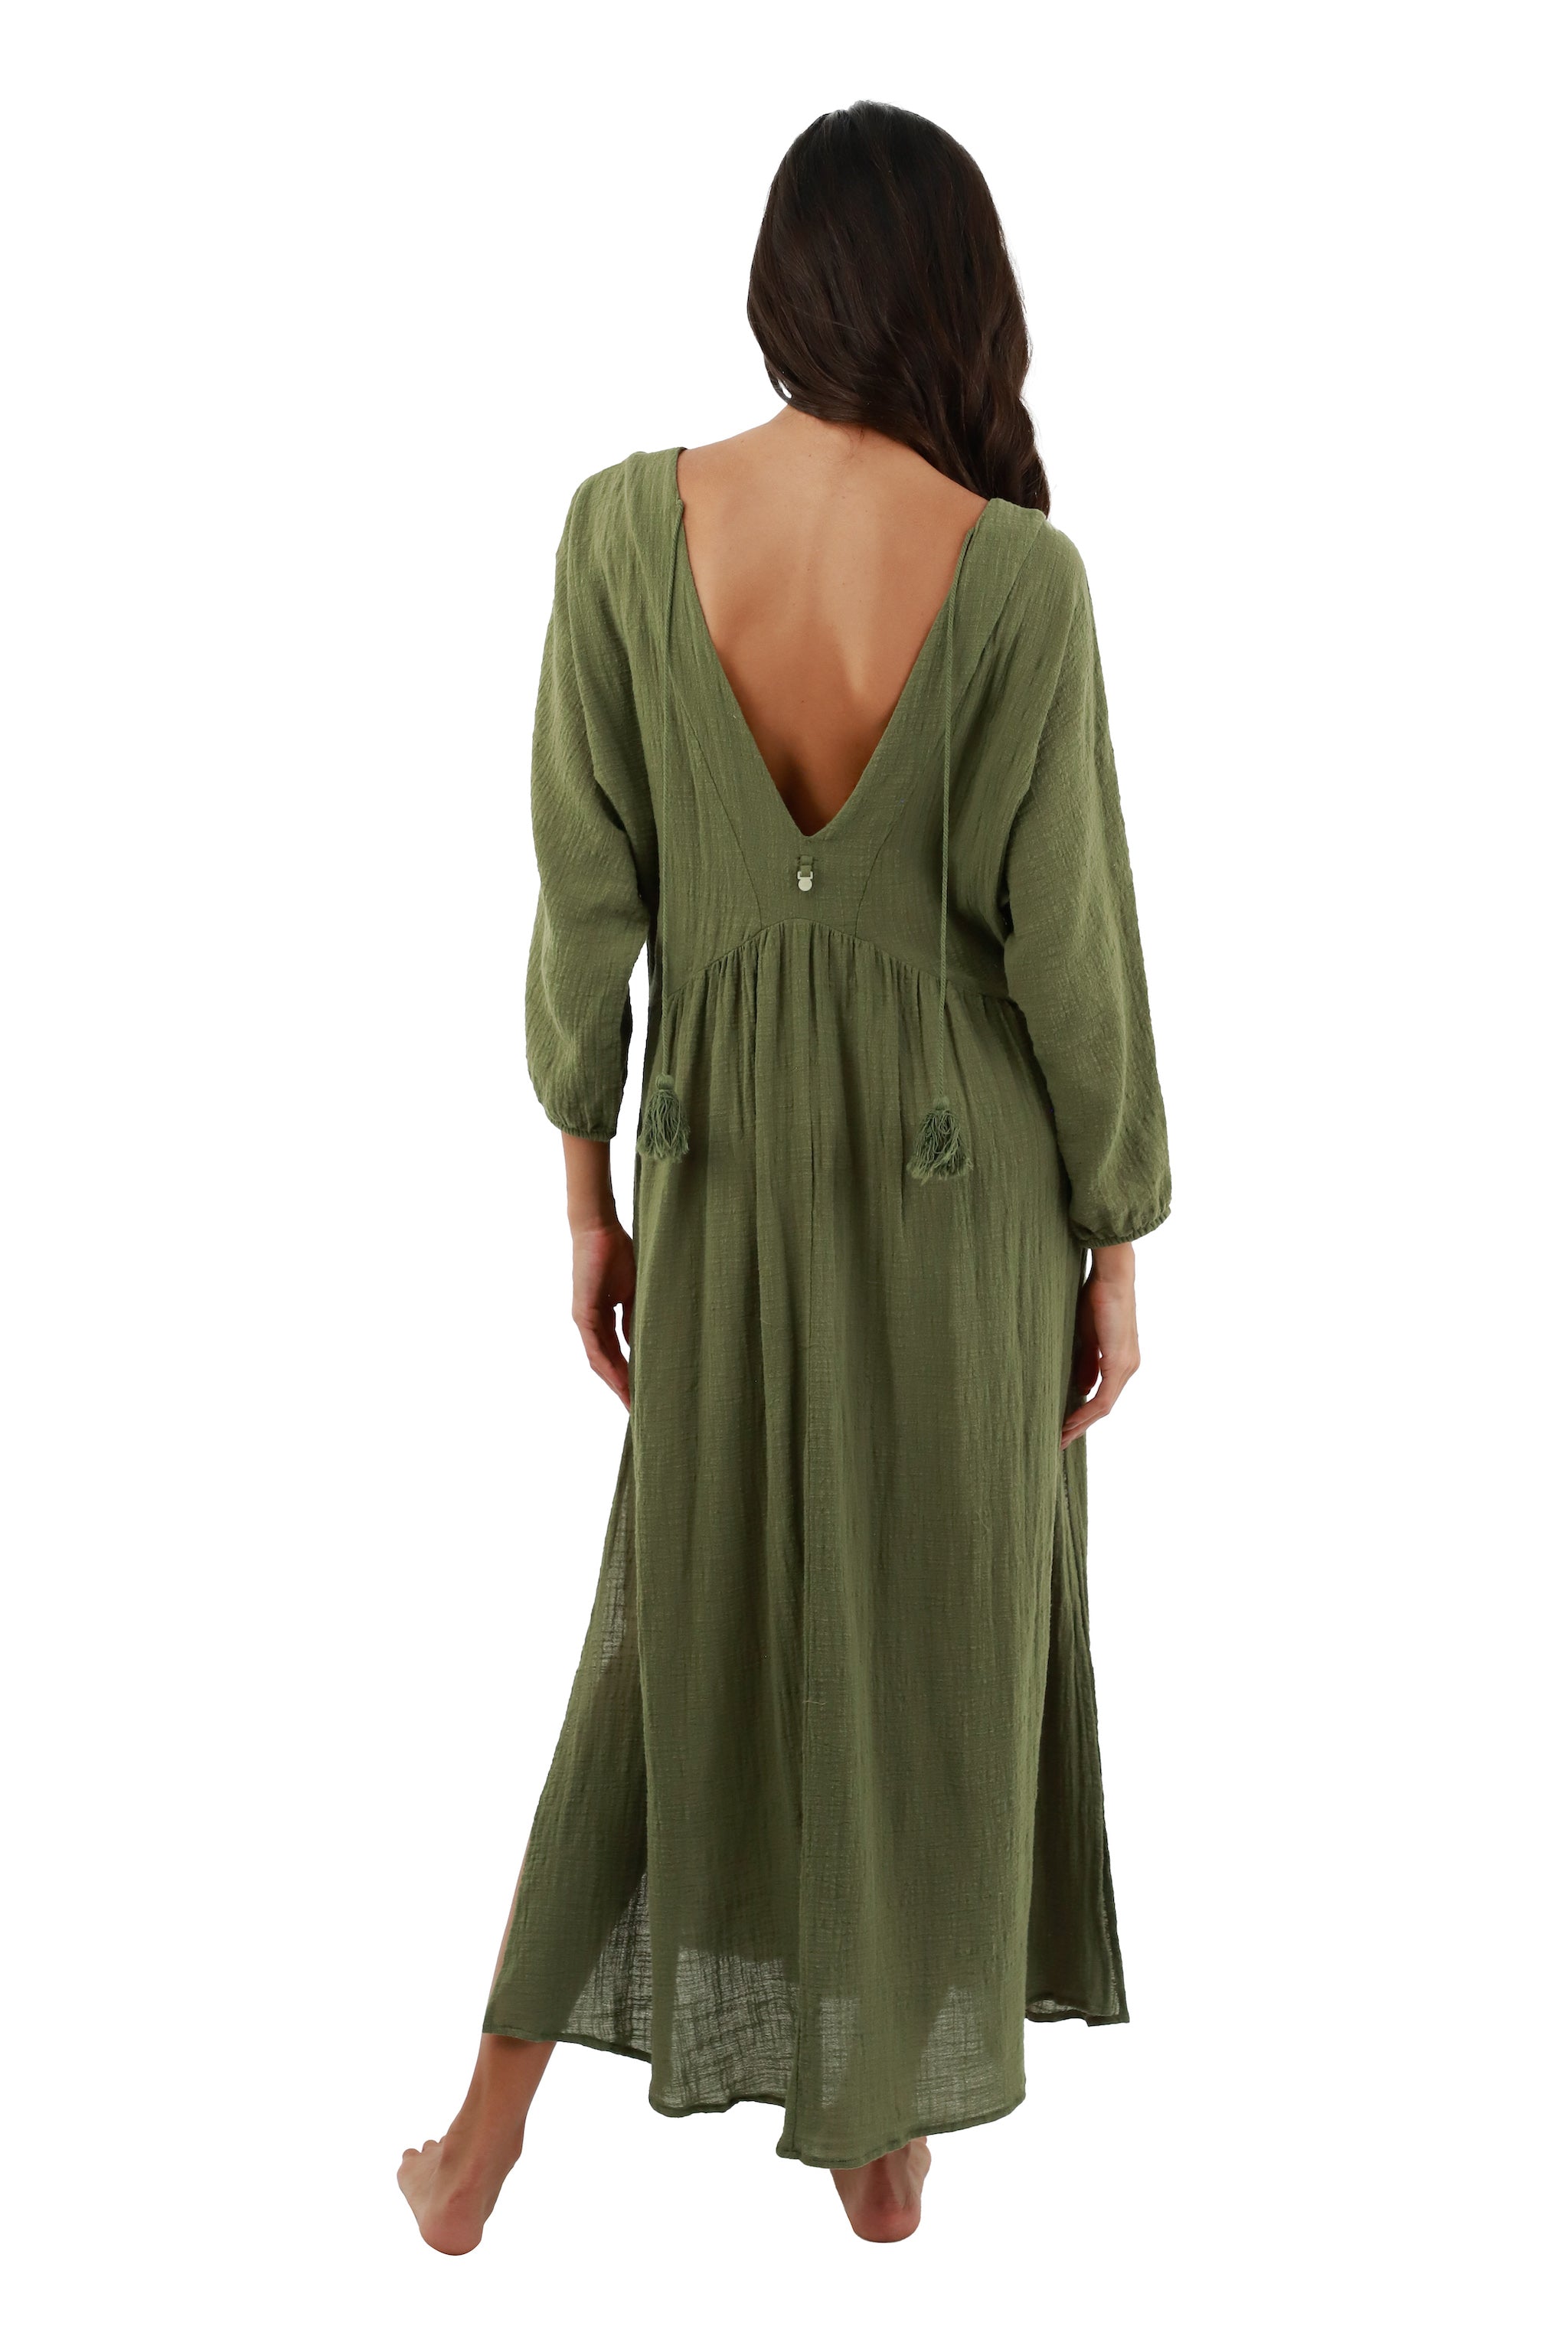 Clover Green Easy Dress